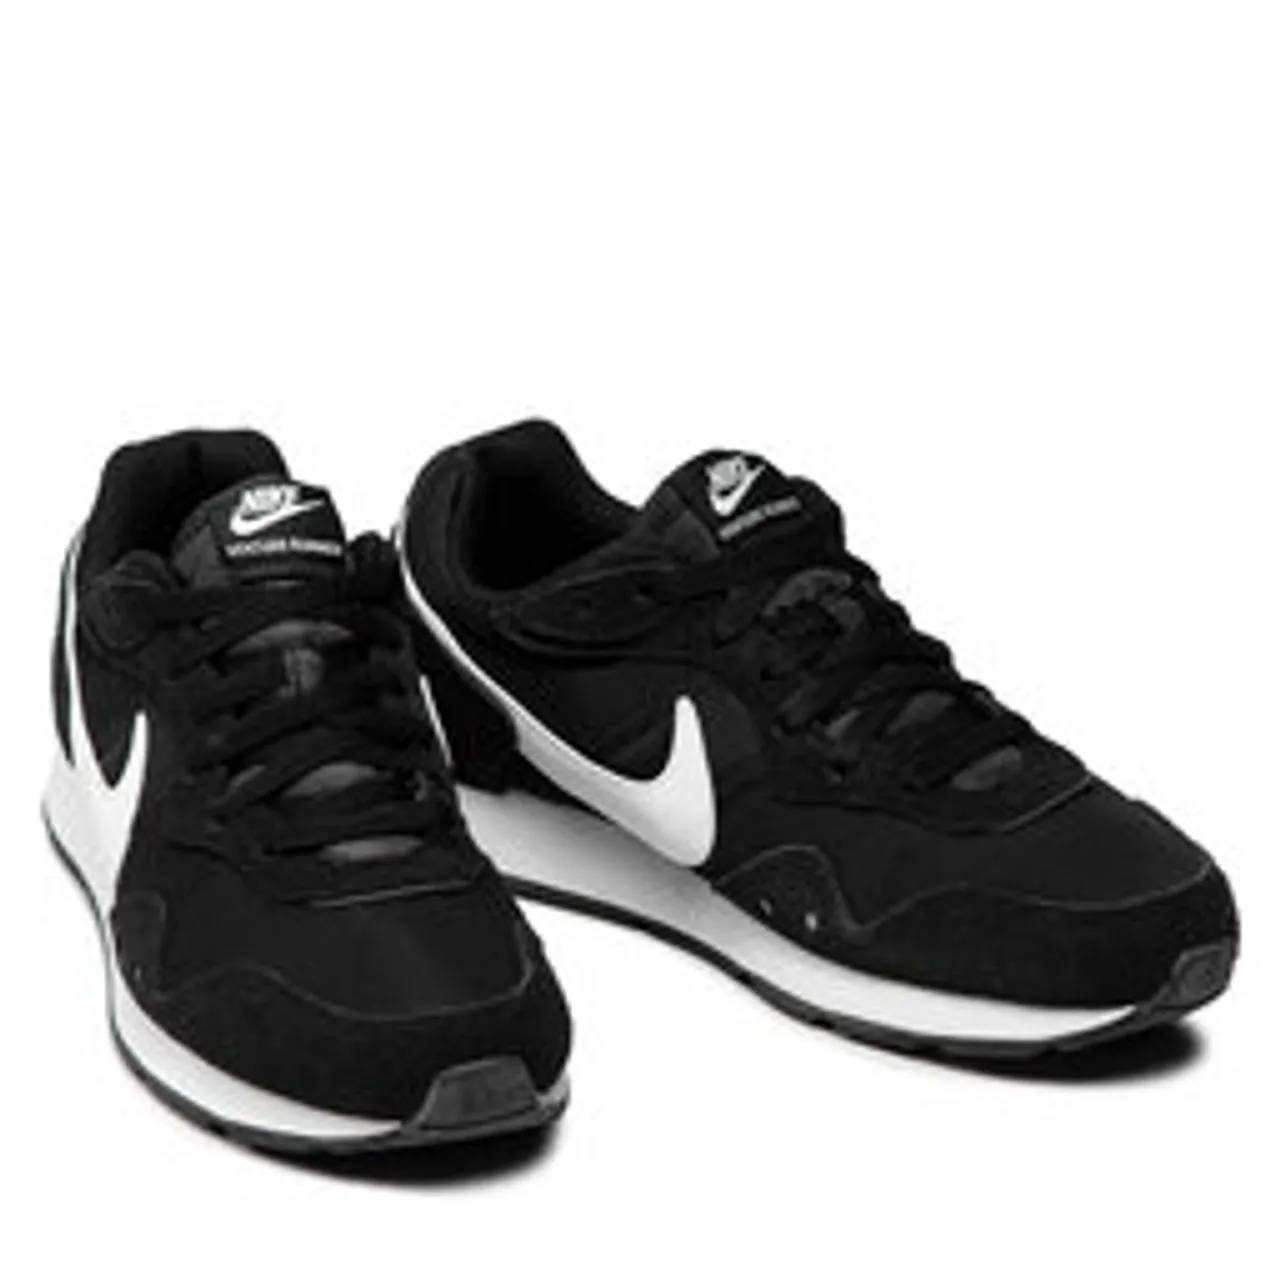 Schuhe Nike Venture Runner CK2944 002 Black/White/Black